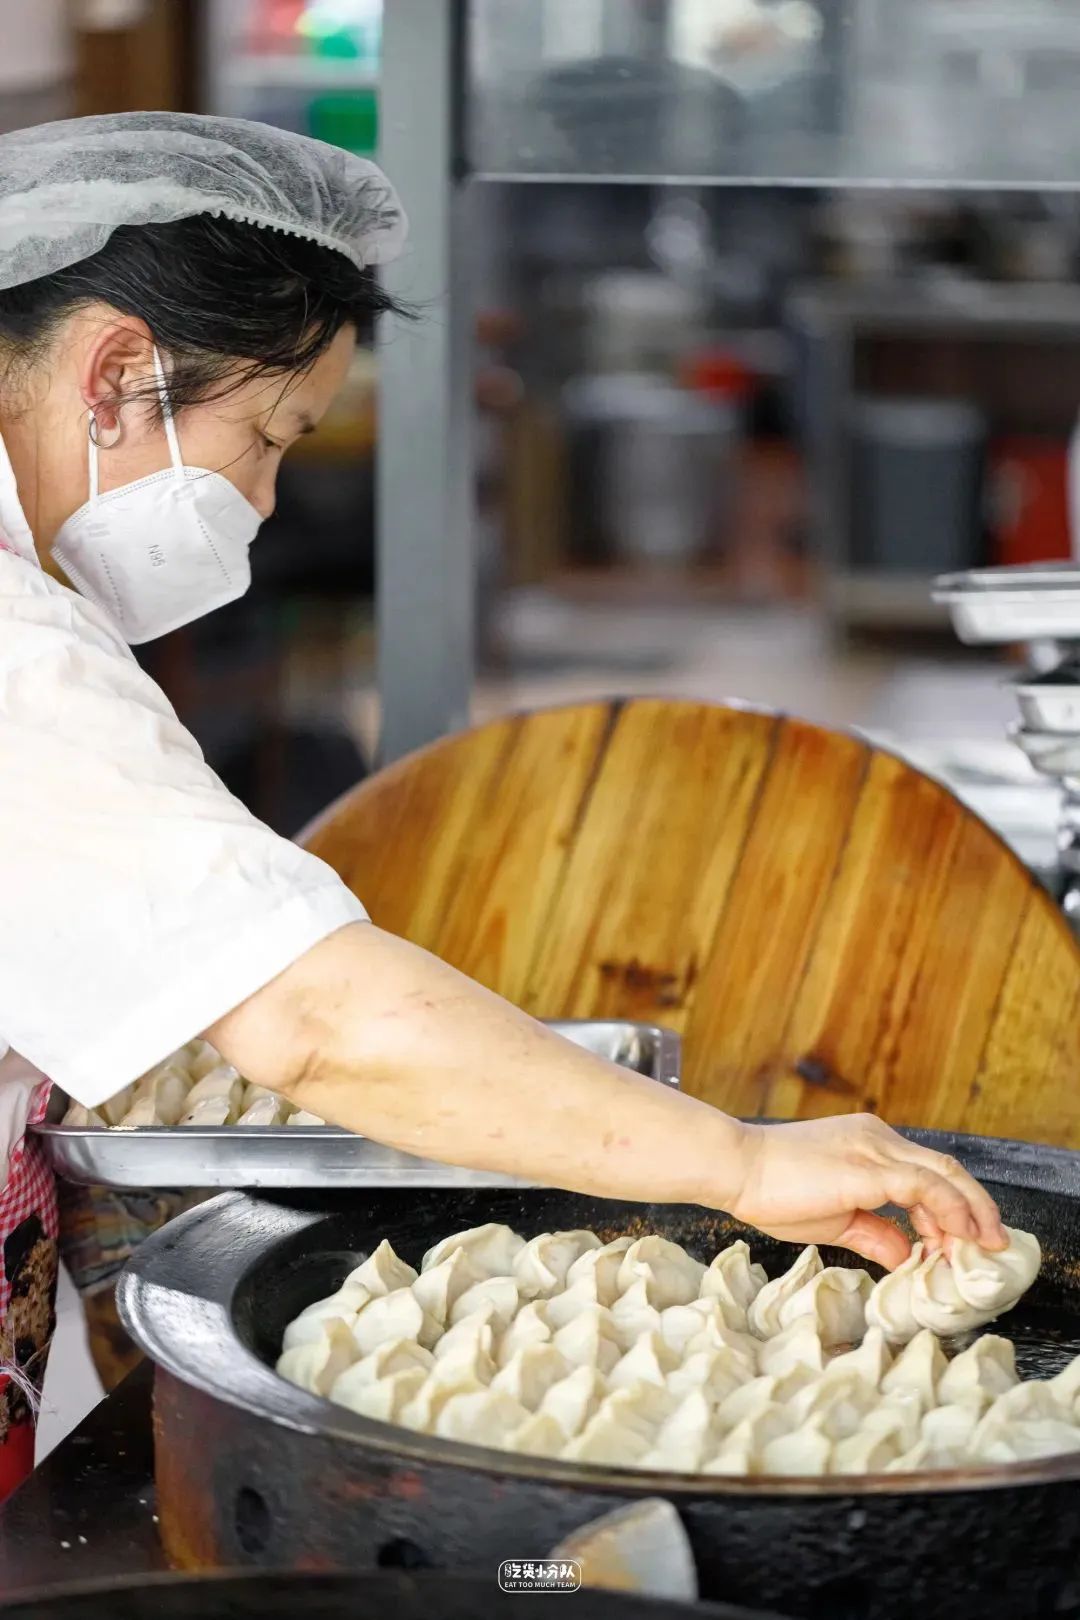 Khám phá ẩm thực vỉa hè của các bà dì Thượng Hải: Những quầy hàng gắn liền với tuổi thơ bao thế hệ - ảnh 7